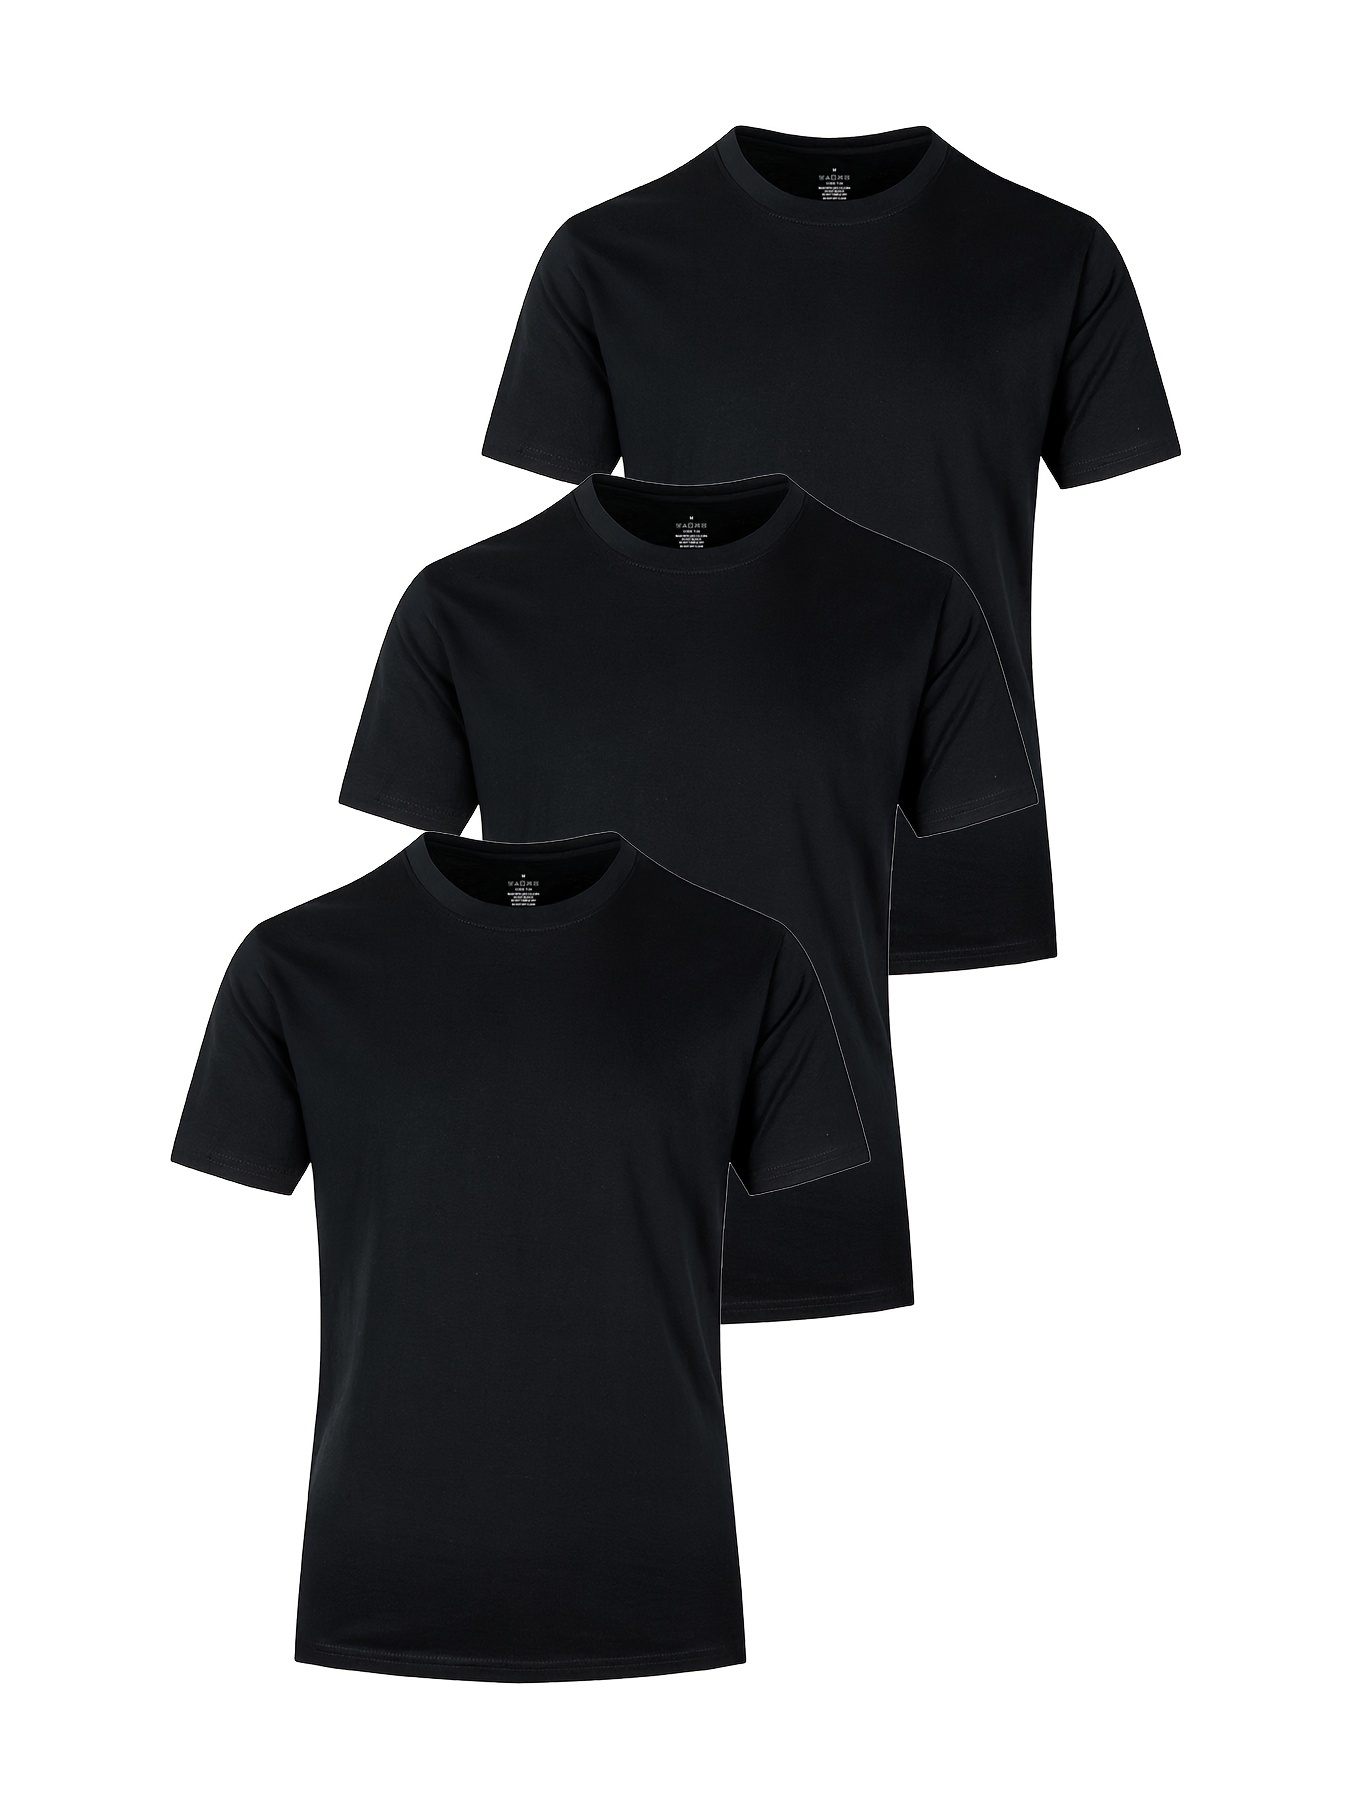 Camisetas de hombre negras PUMA de algodón